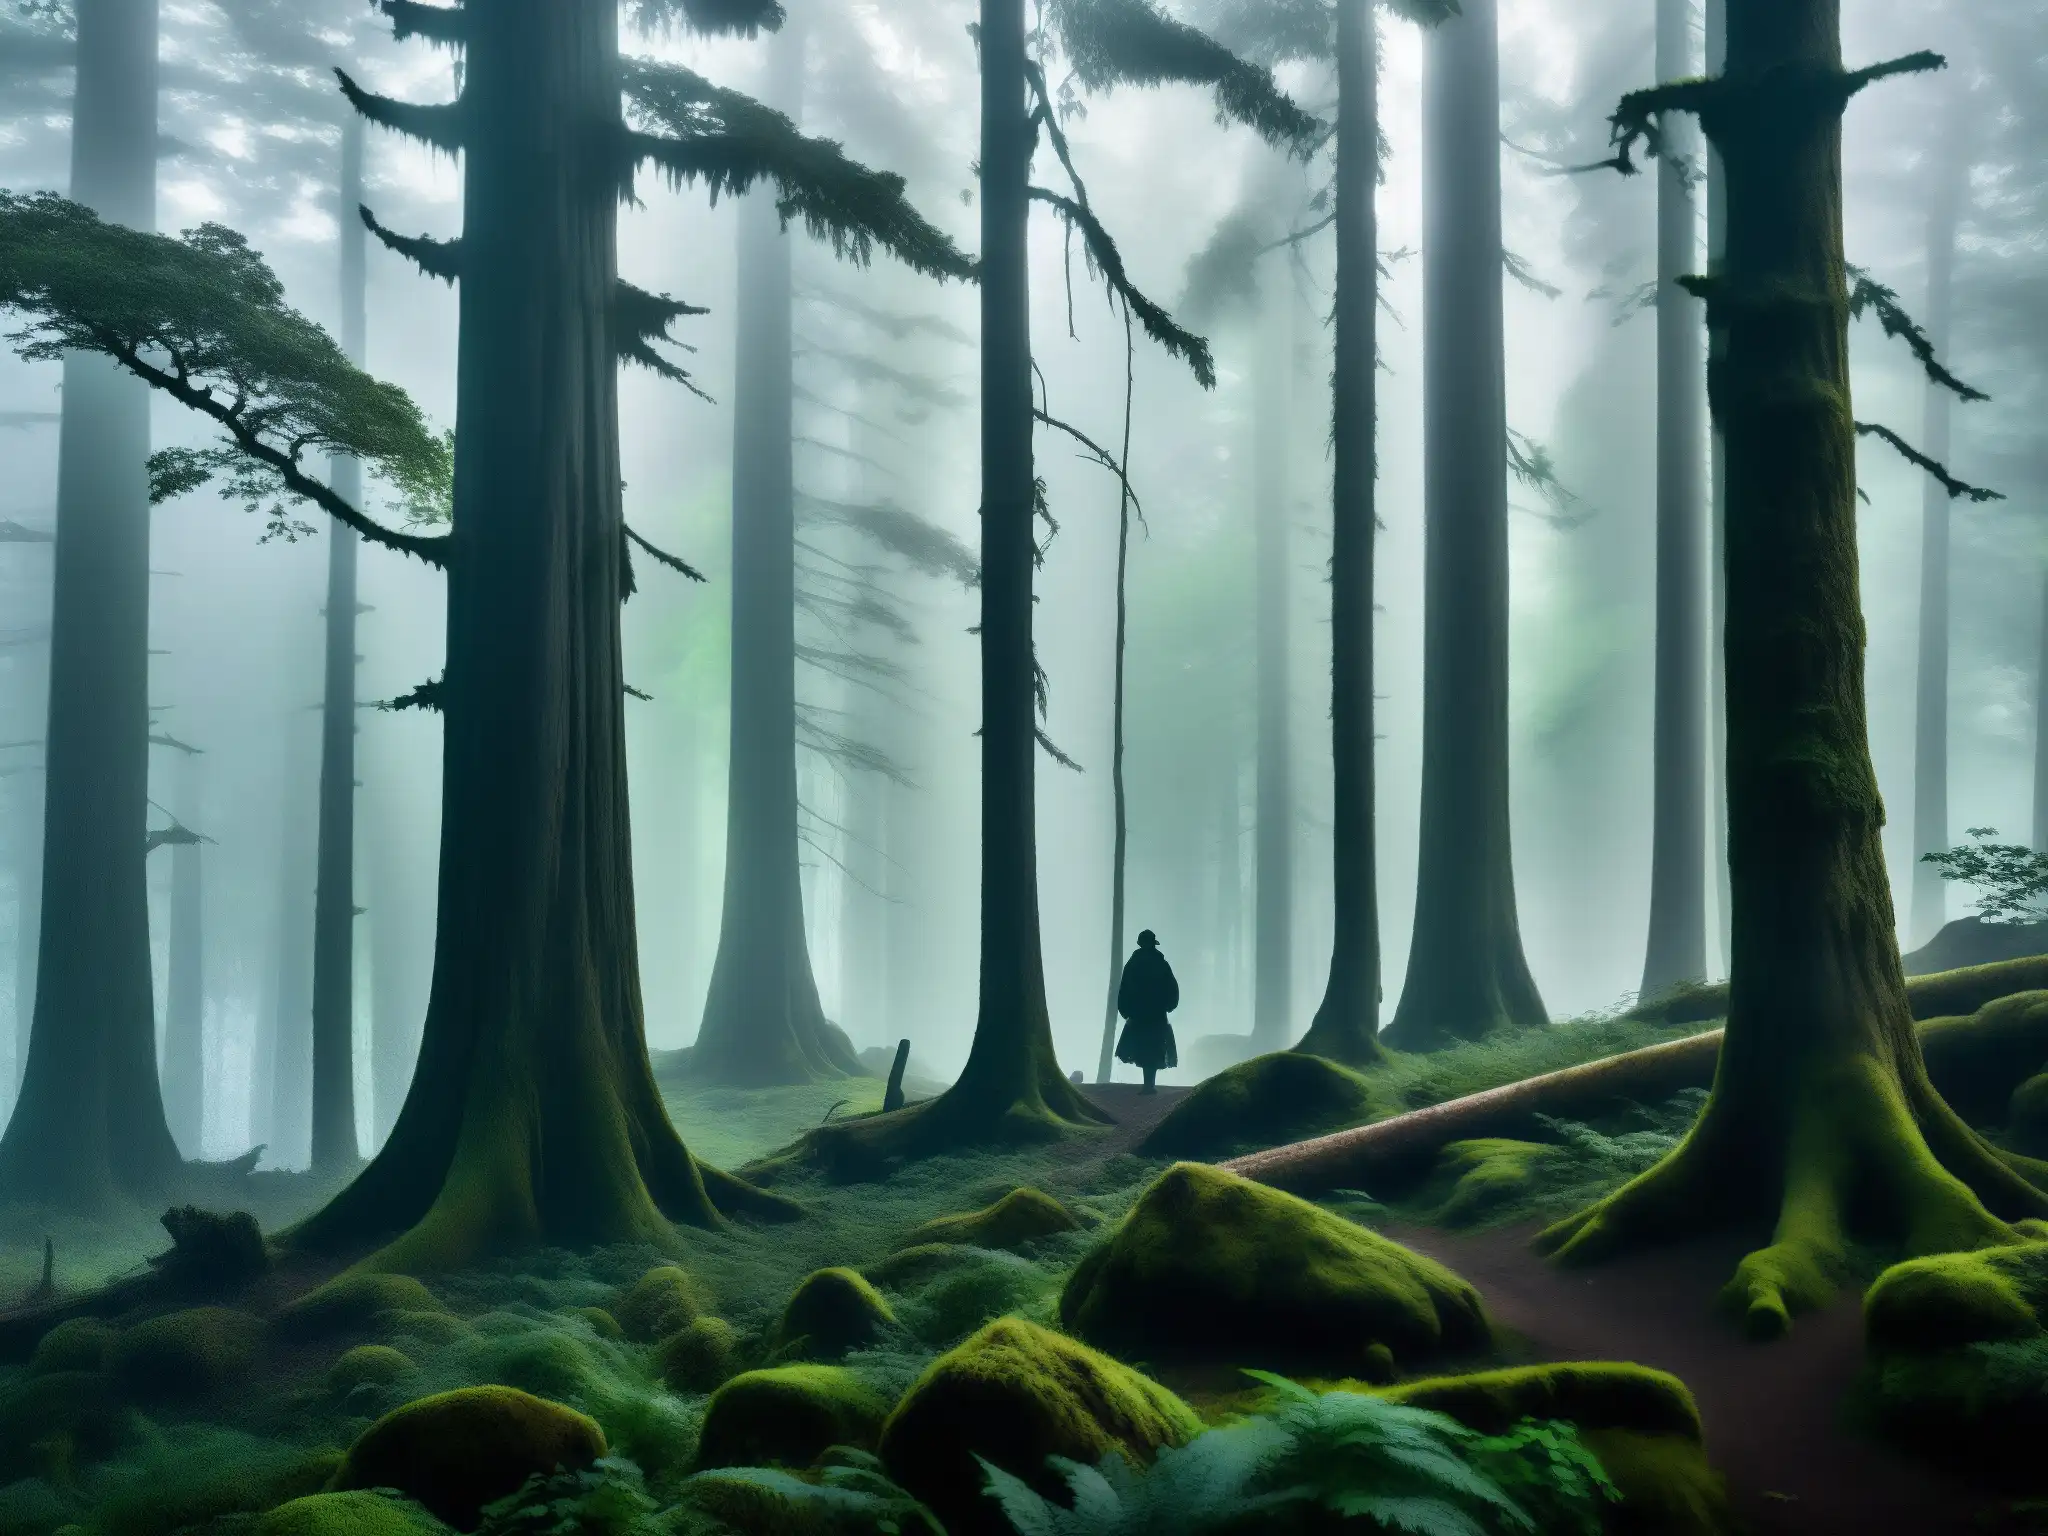 Imagen de los misteriosos bosques de la región Churel, con la niebla entre los árboles y la silueta de una figura legendaria